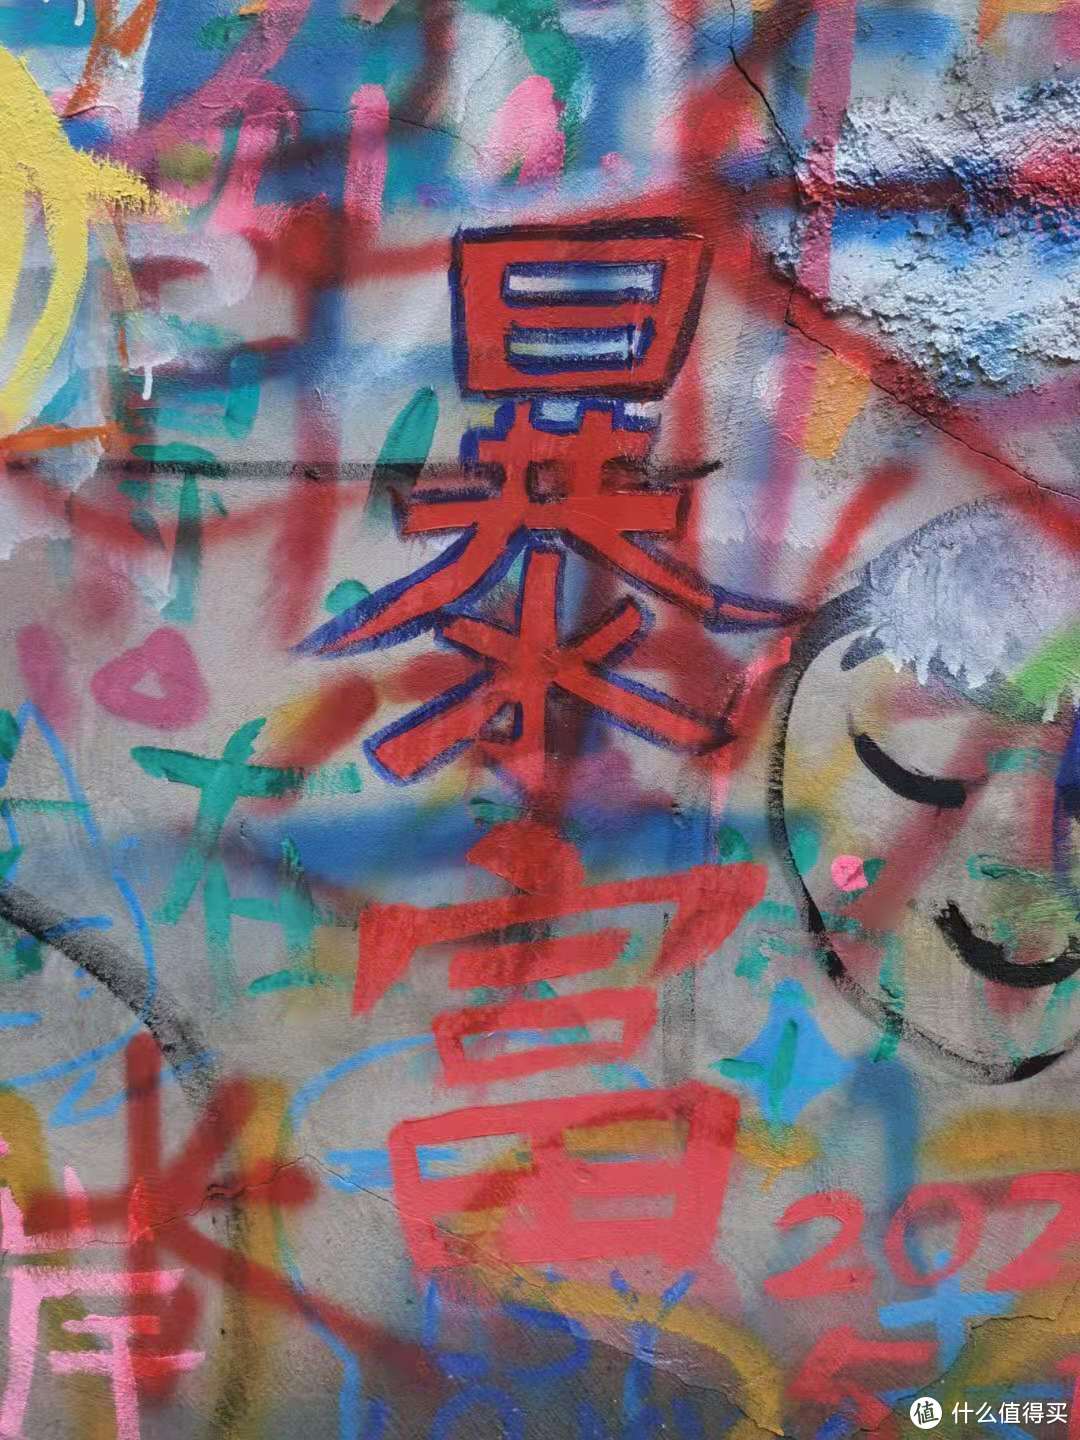 追星女孩必打卡的重庆一条街——黄桷坪涂鸦艺术街